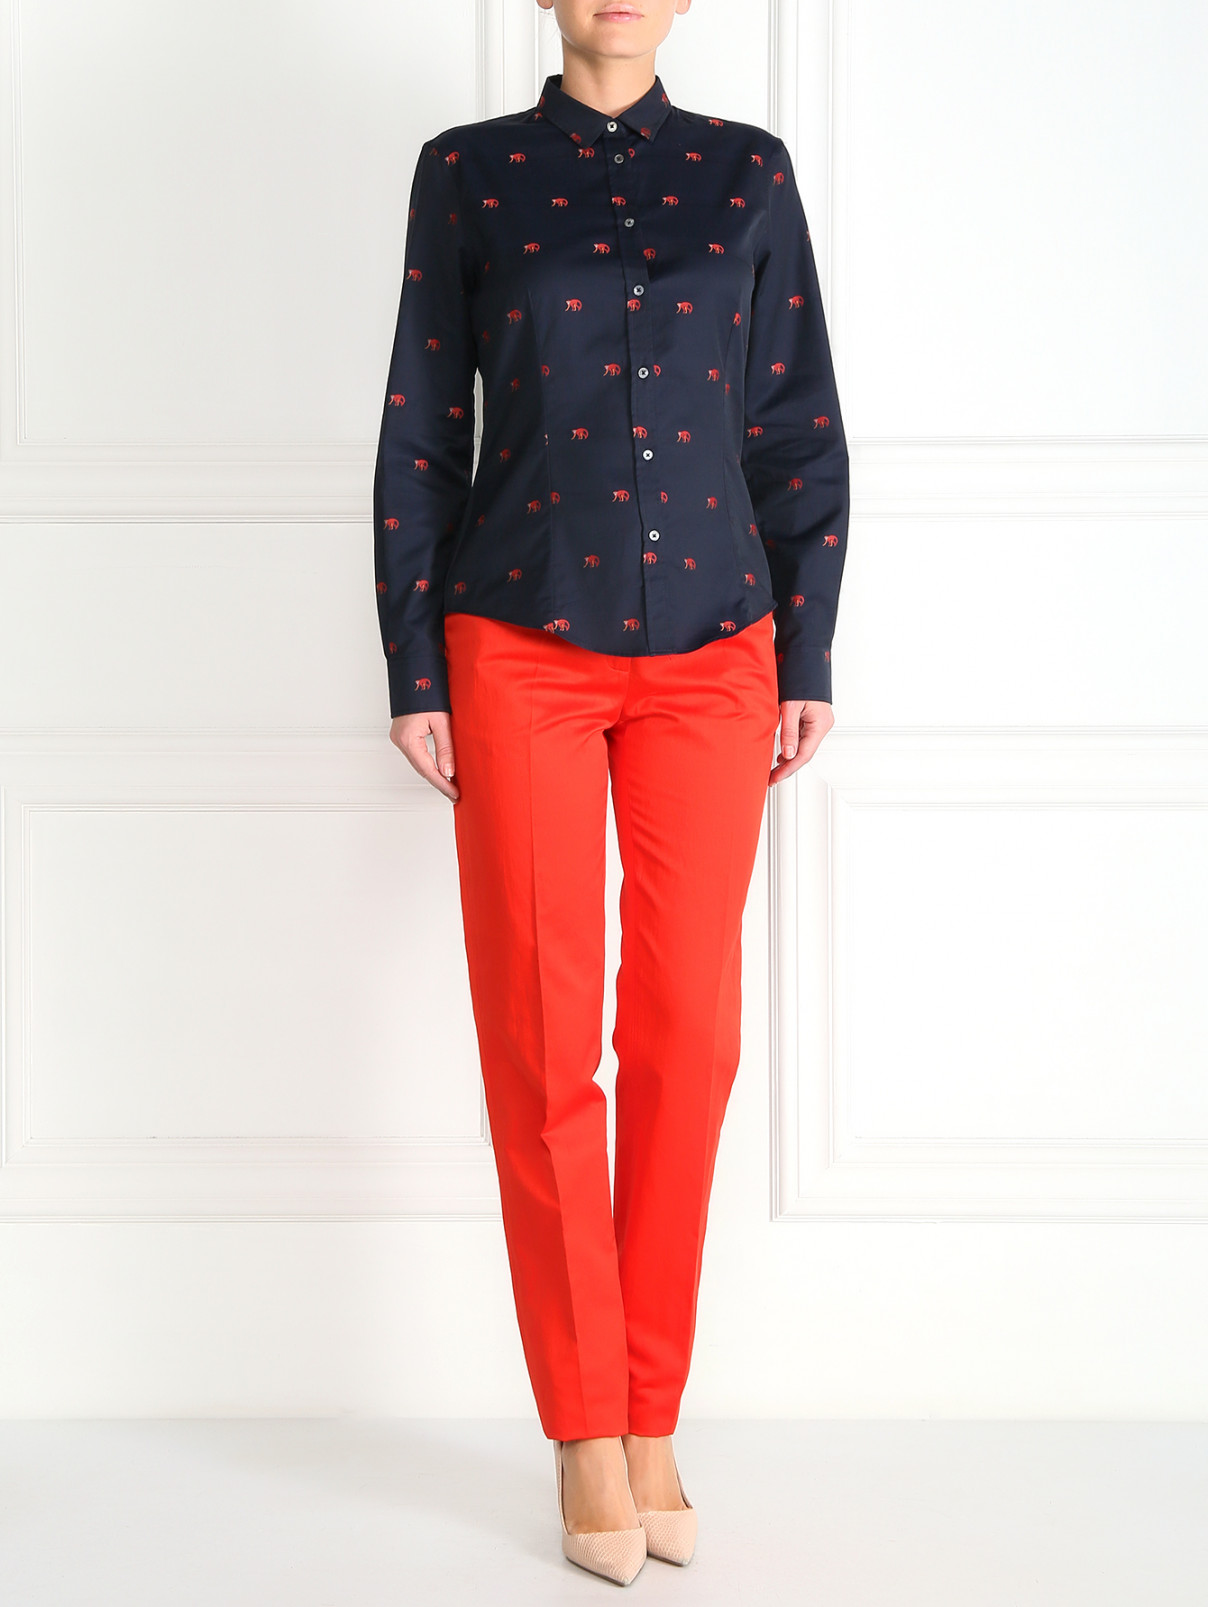 Прямые брюки из хлопка Paul Smith  –  Модель Общий вид  – Цвет:  Красный